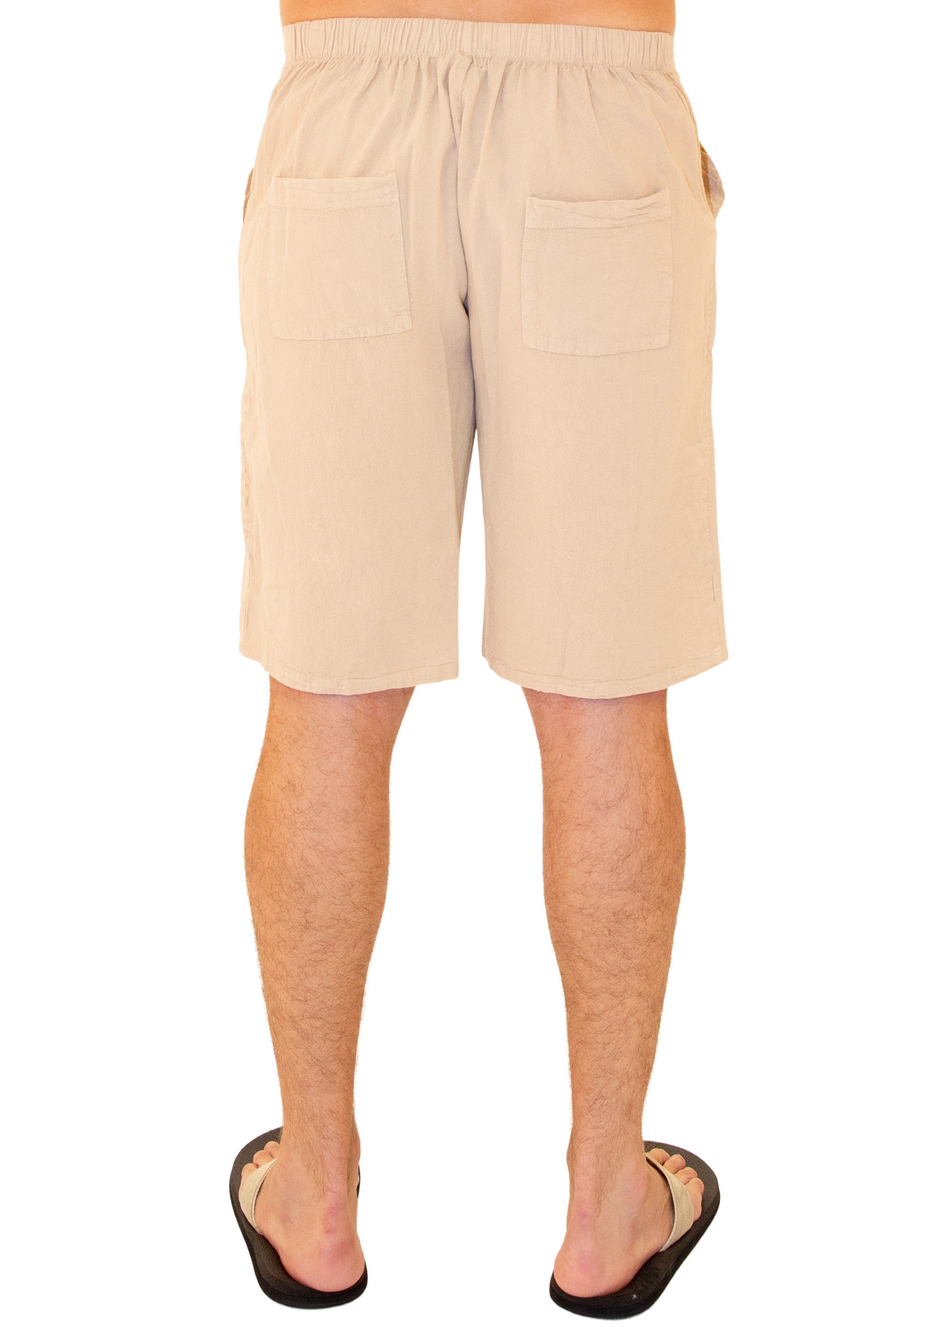 GZ3102 - Beige Cotton Drawstring Waist Shorts